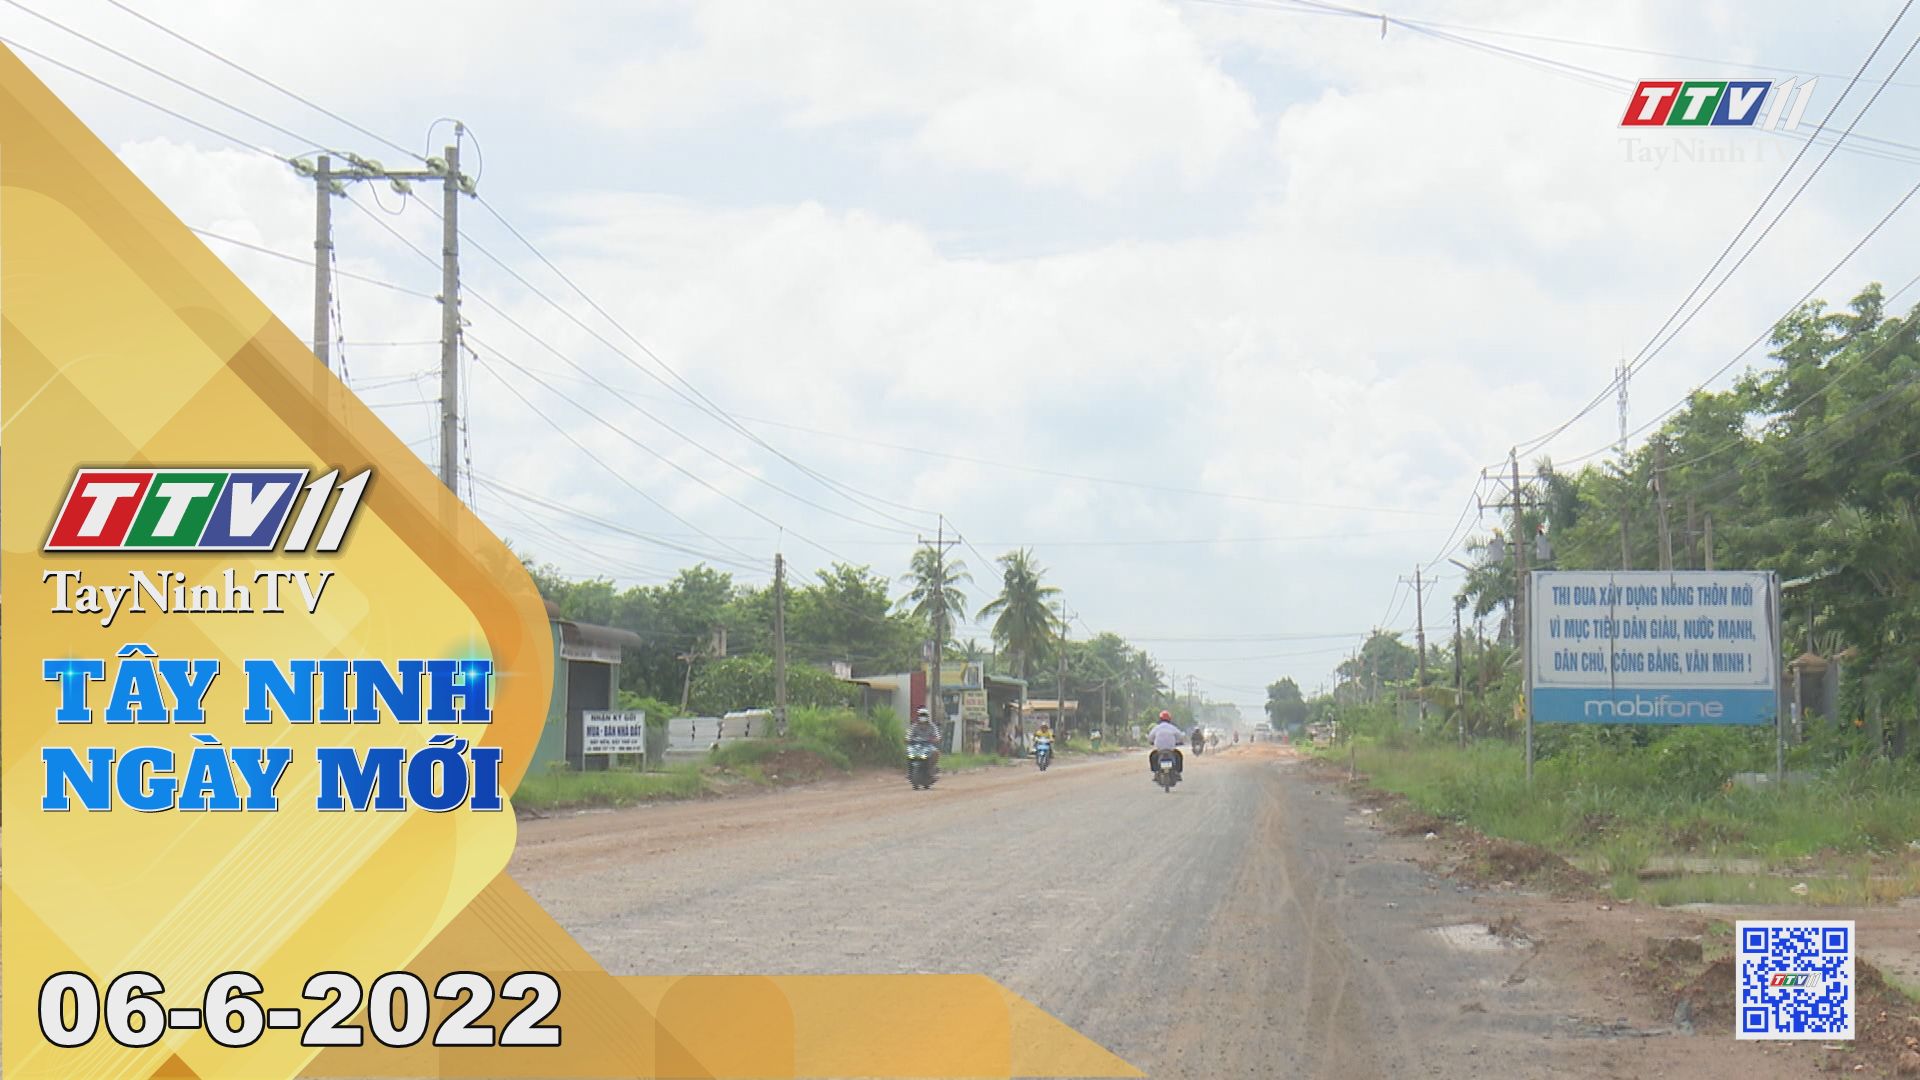 Tây Ninh ngày mới 06-6-2022 | Tin tức hôm nay | TayNinhTV